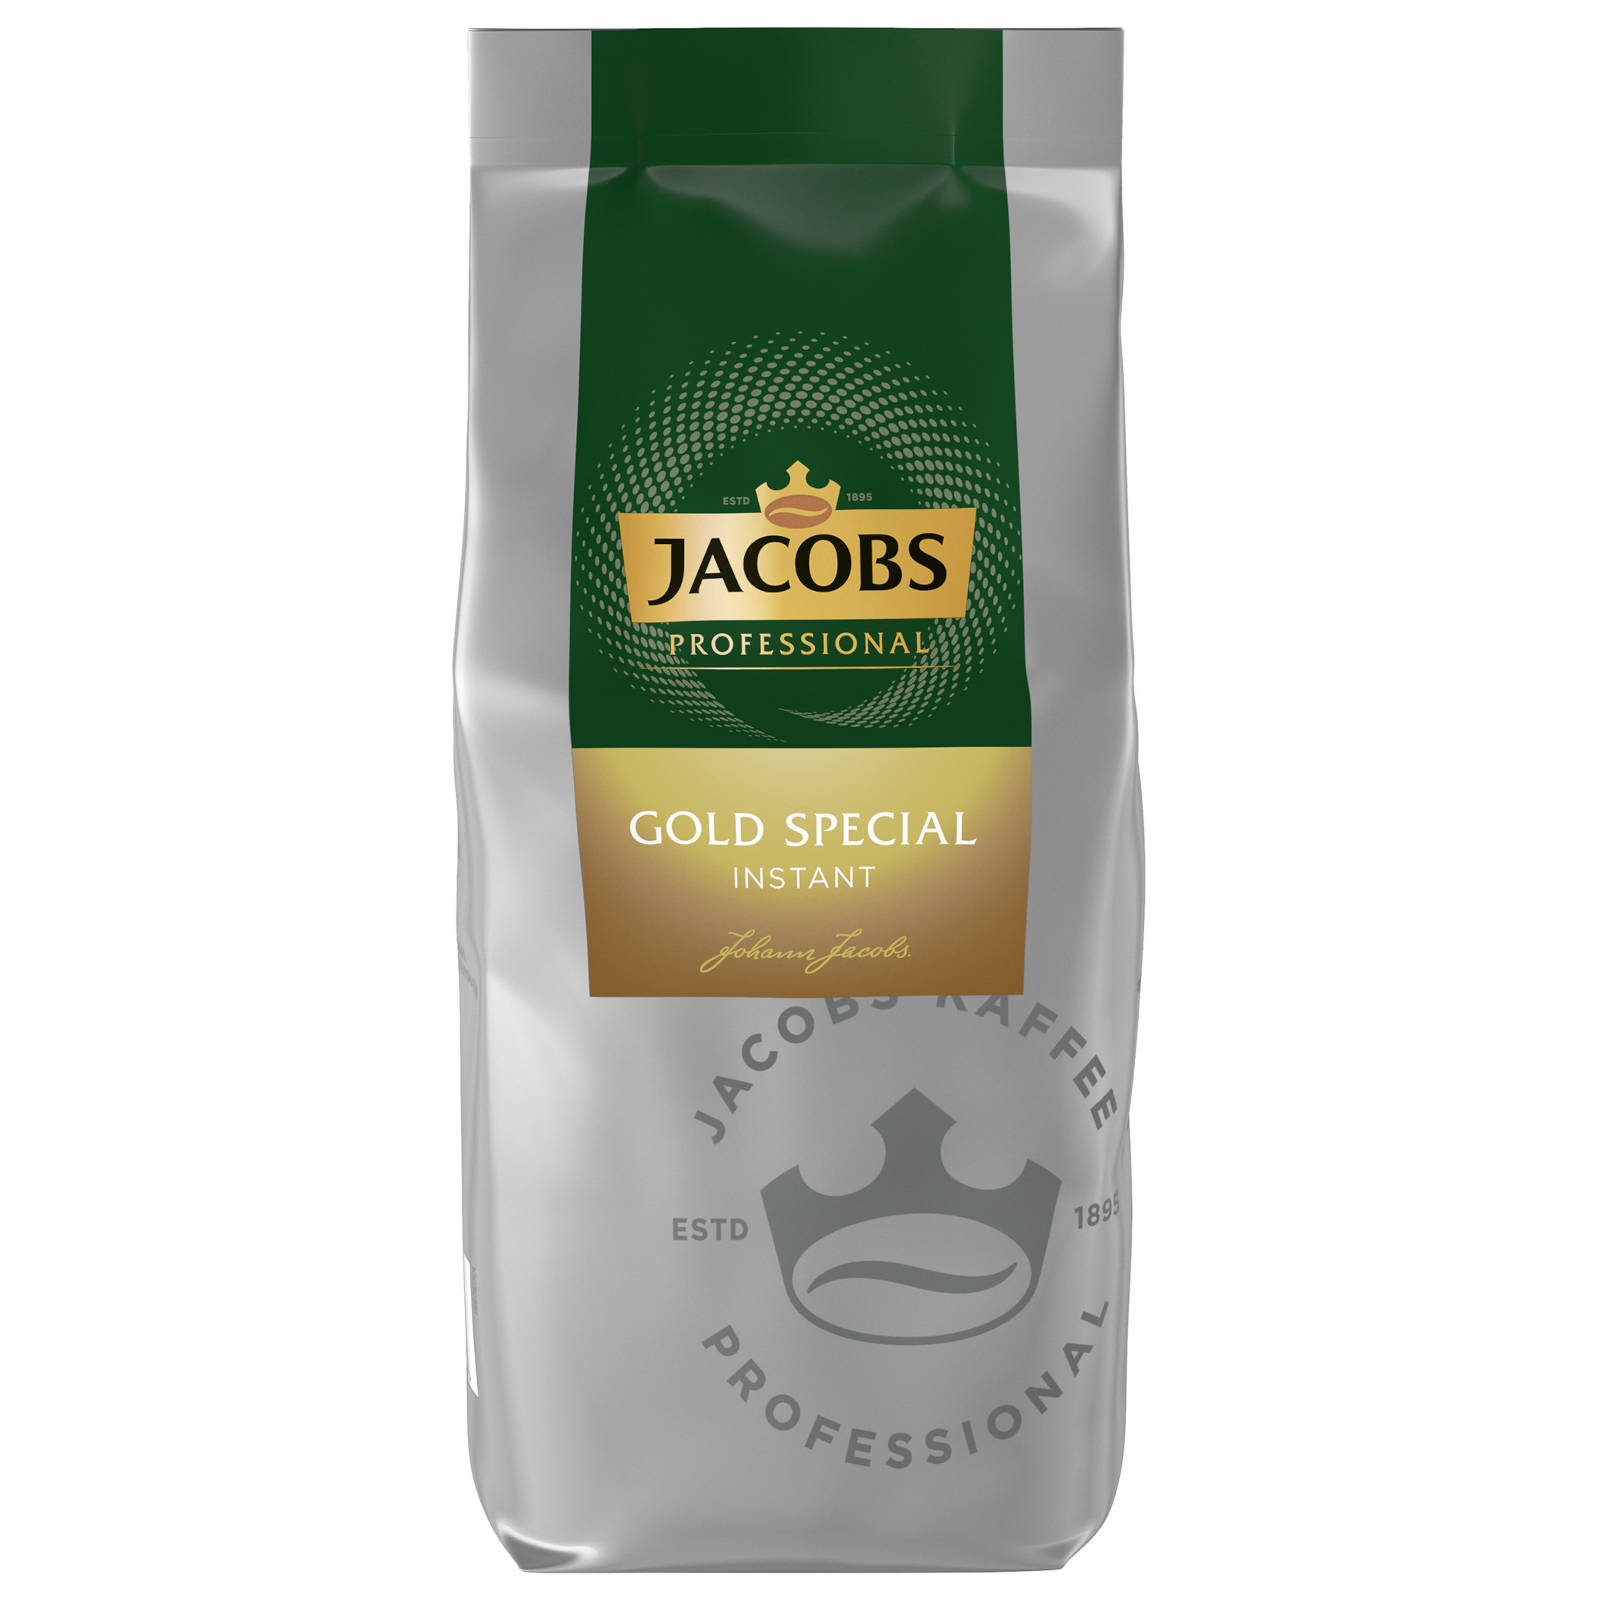 Heißgetränkeautomaten) JACOBS heißem (In g Special Wasser Gold Instantkaffee auflösen, Professiona 2x500